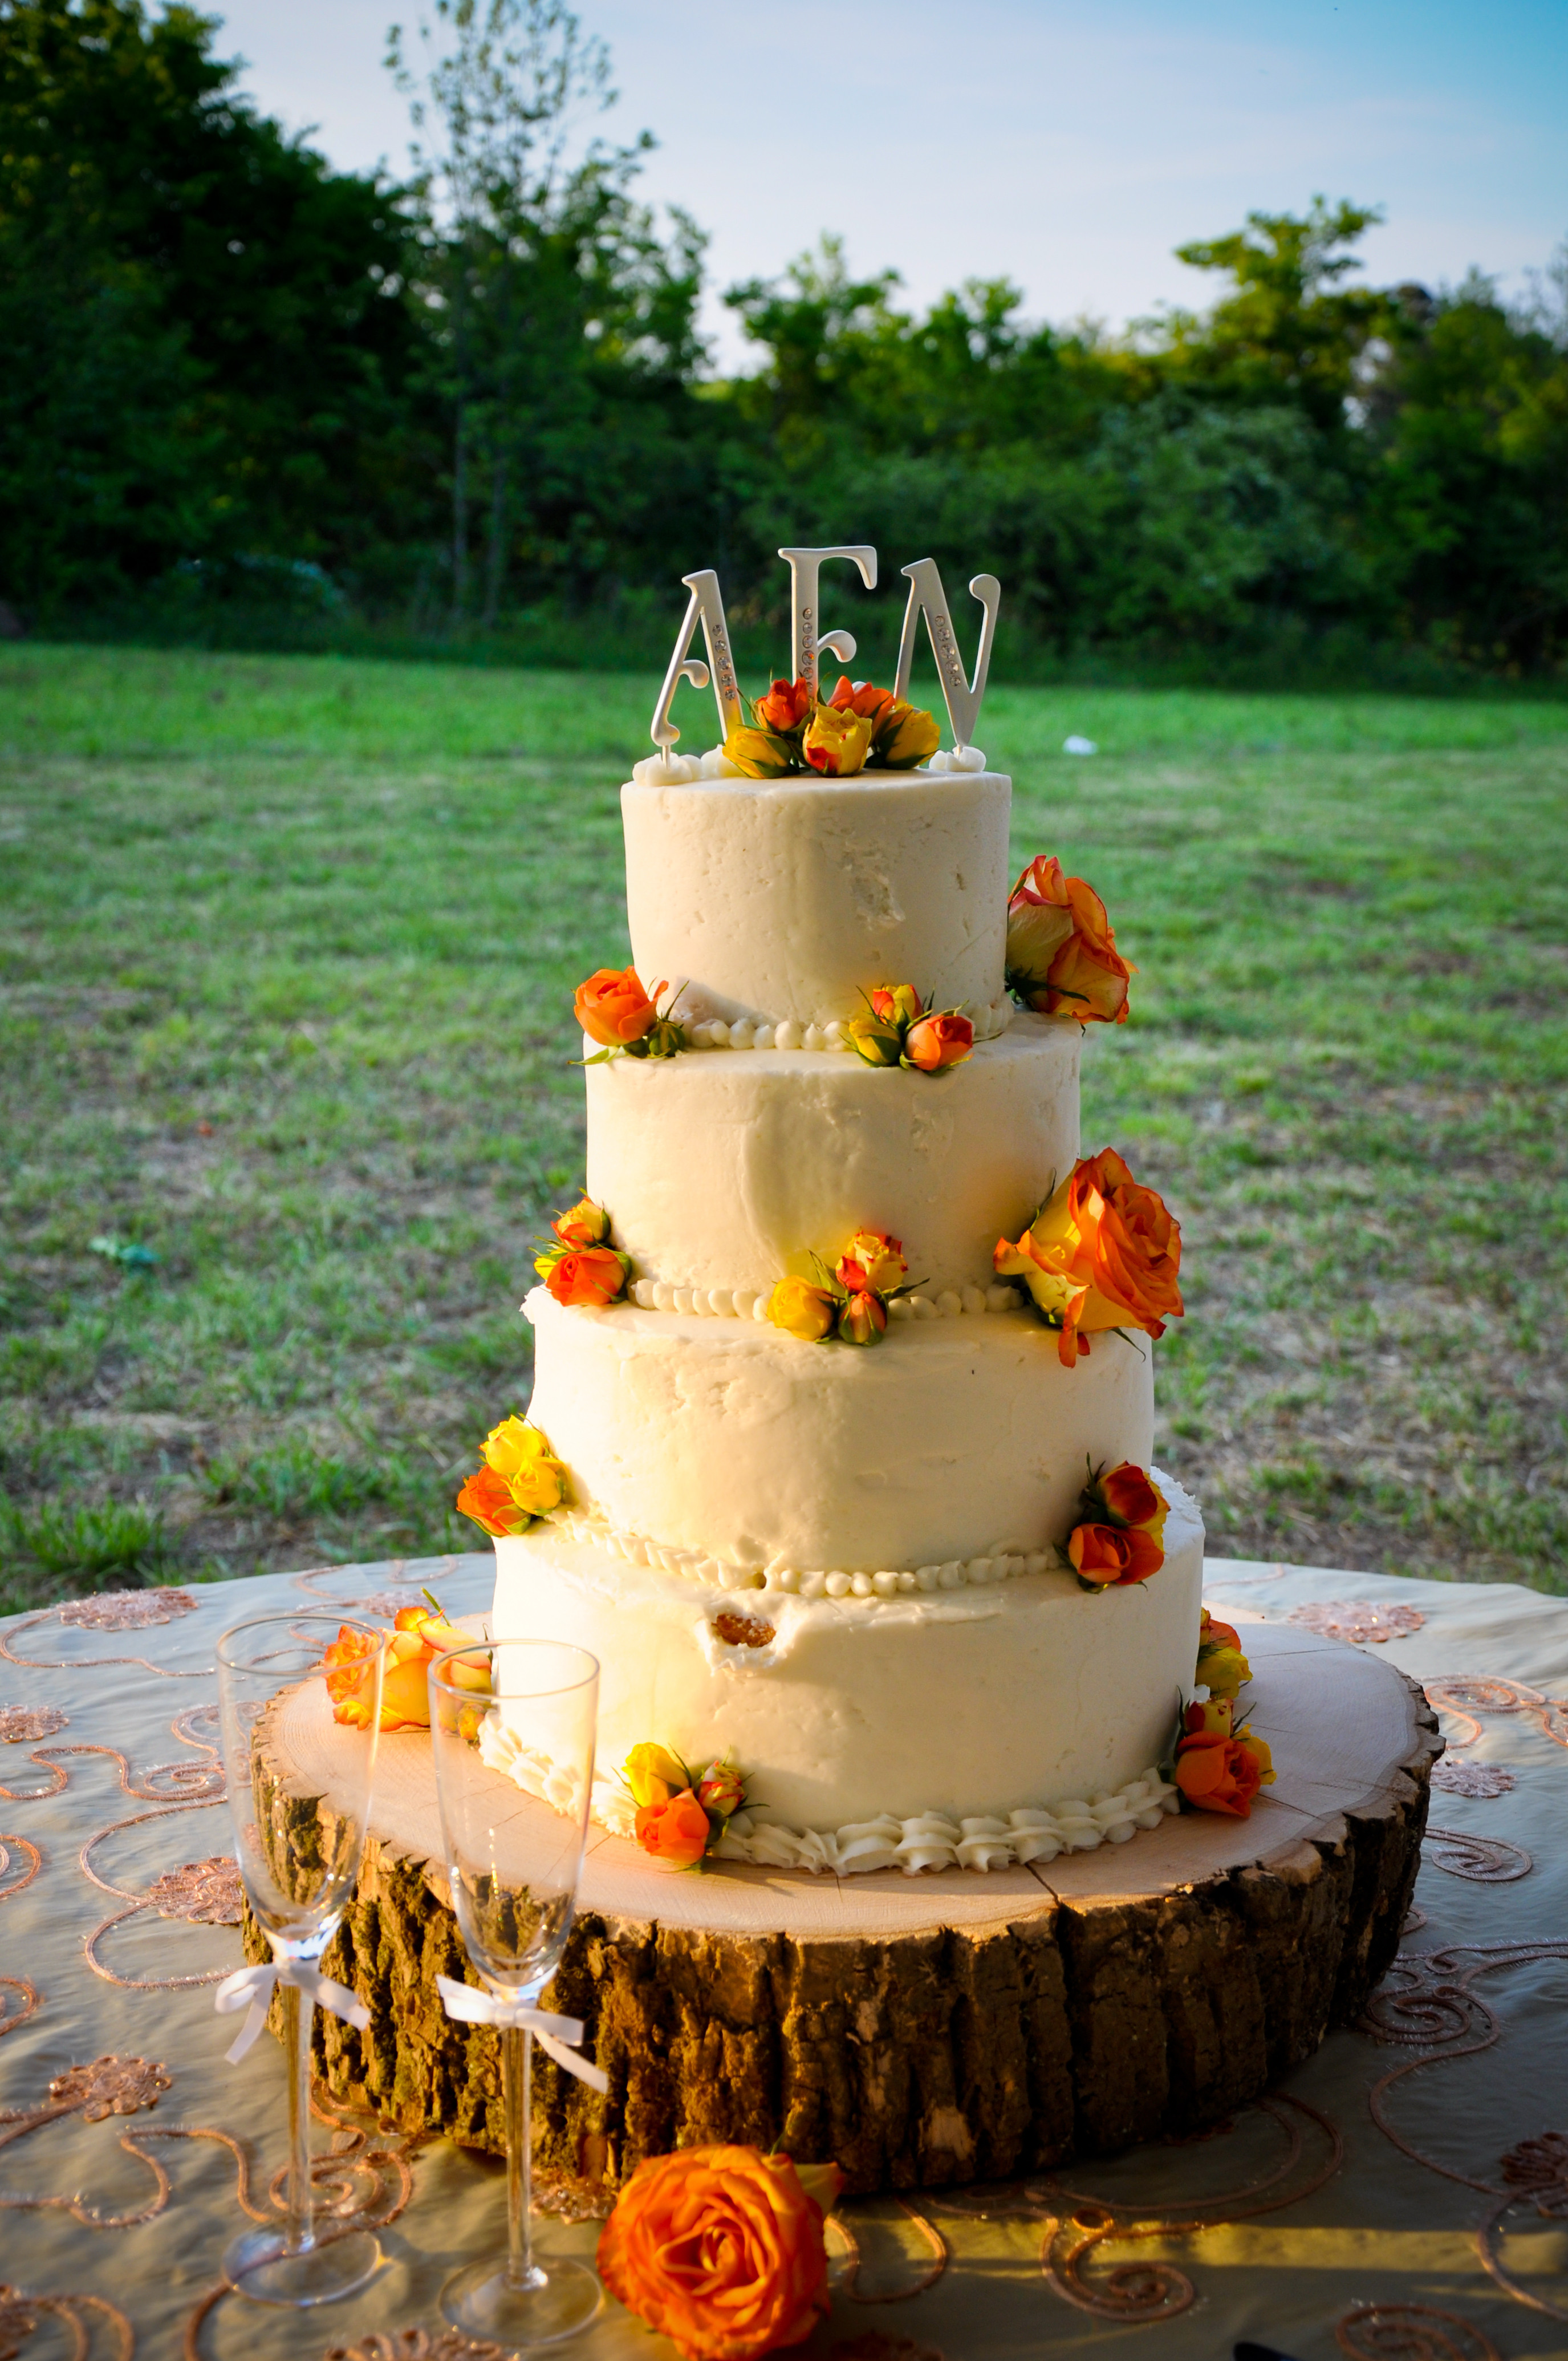 Rustic Fall Wedding Cakes
 Alabama Farm Wedding LaBou re Farms Rustic Wedding Chic